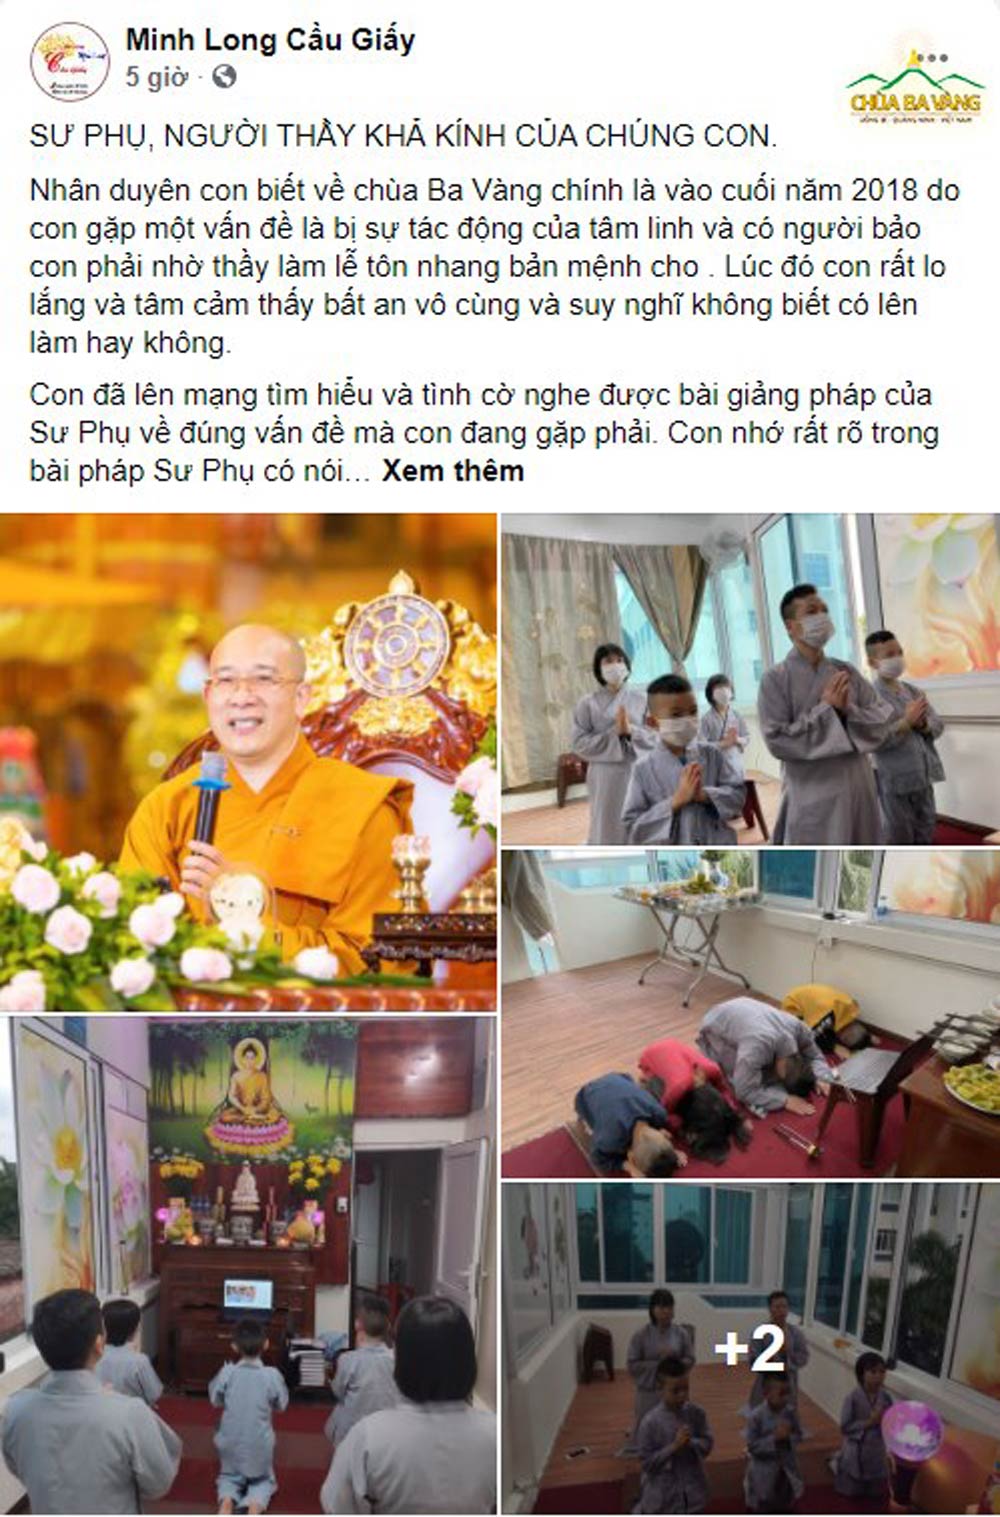 Bài viết tri ân của gia đình Phật tử được đăng tải trên trang Fanpage Minh Long Cúc Vàng